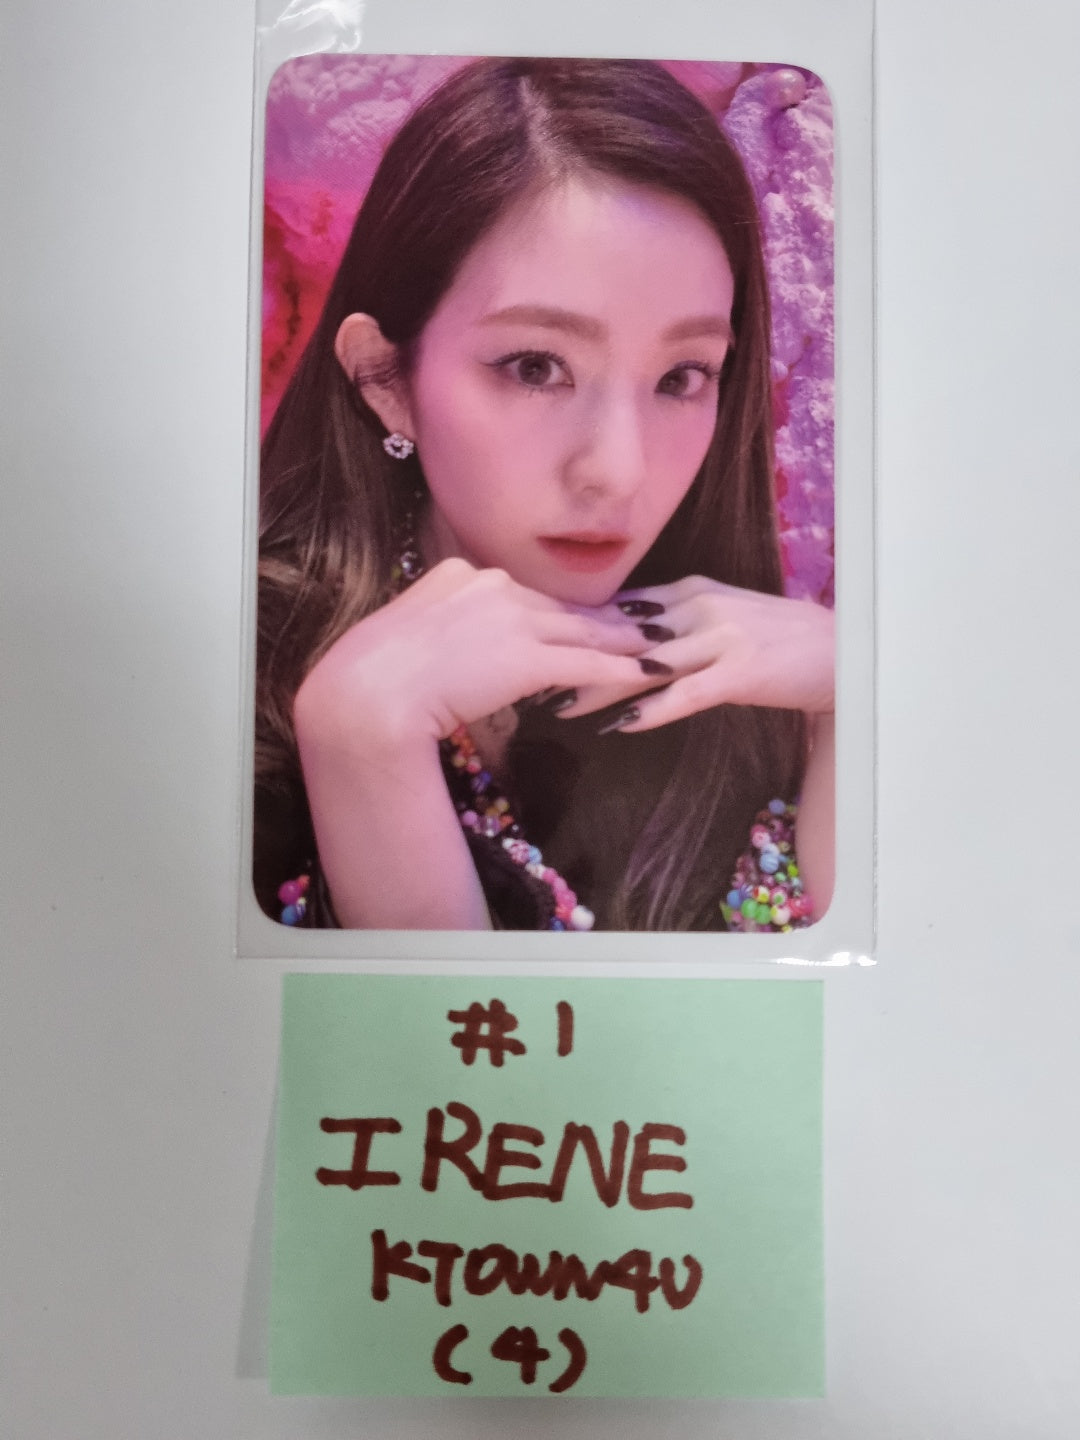 Red Velvet "Birthday" The ReVe Festival 2022 - Ktown4U Pre-Order Benefit Photocard